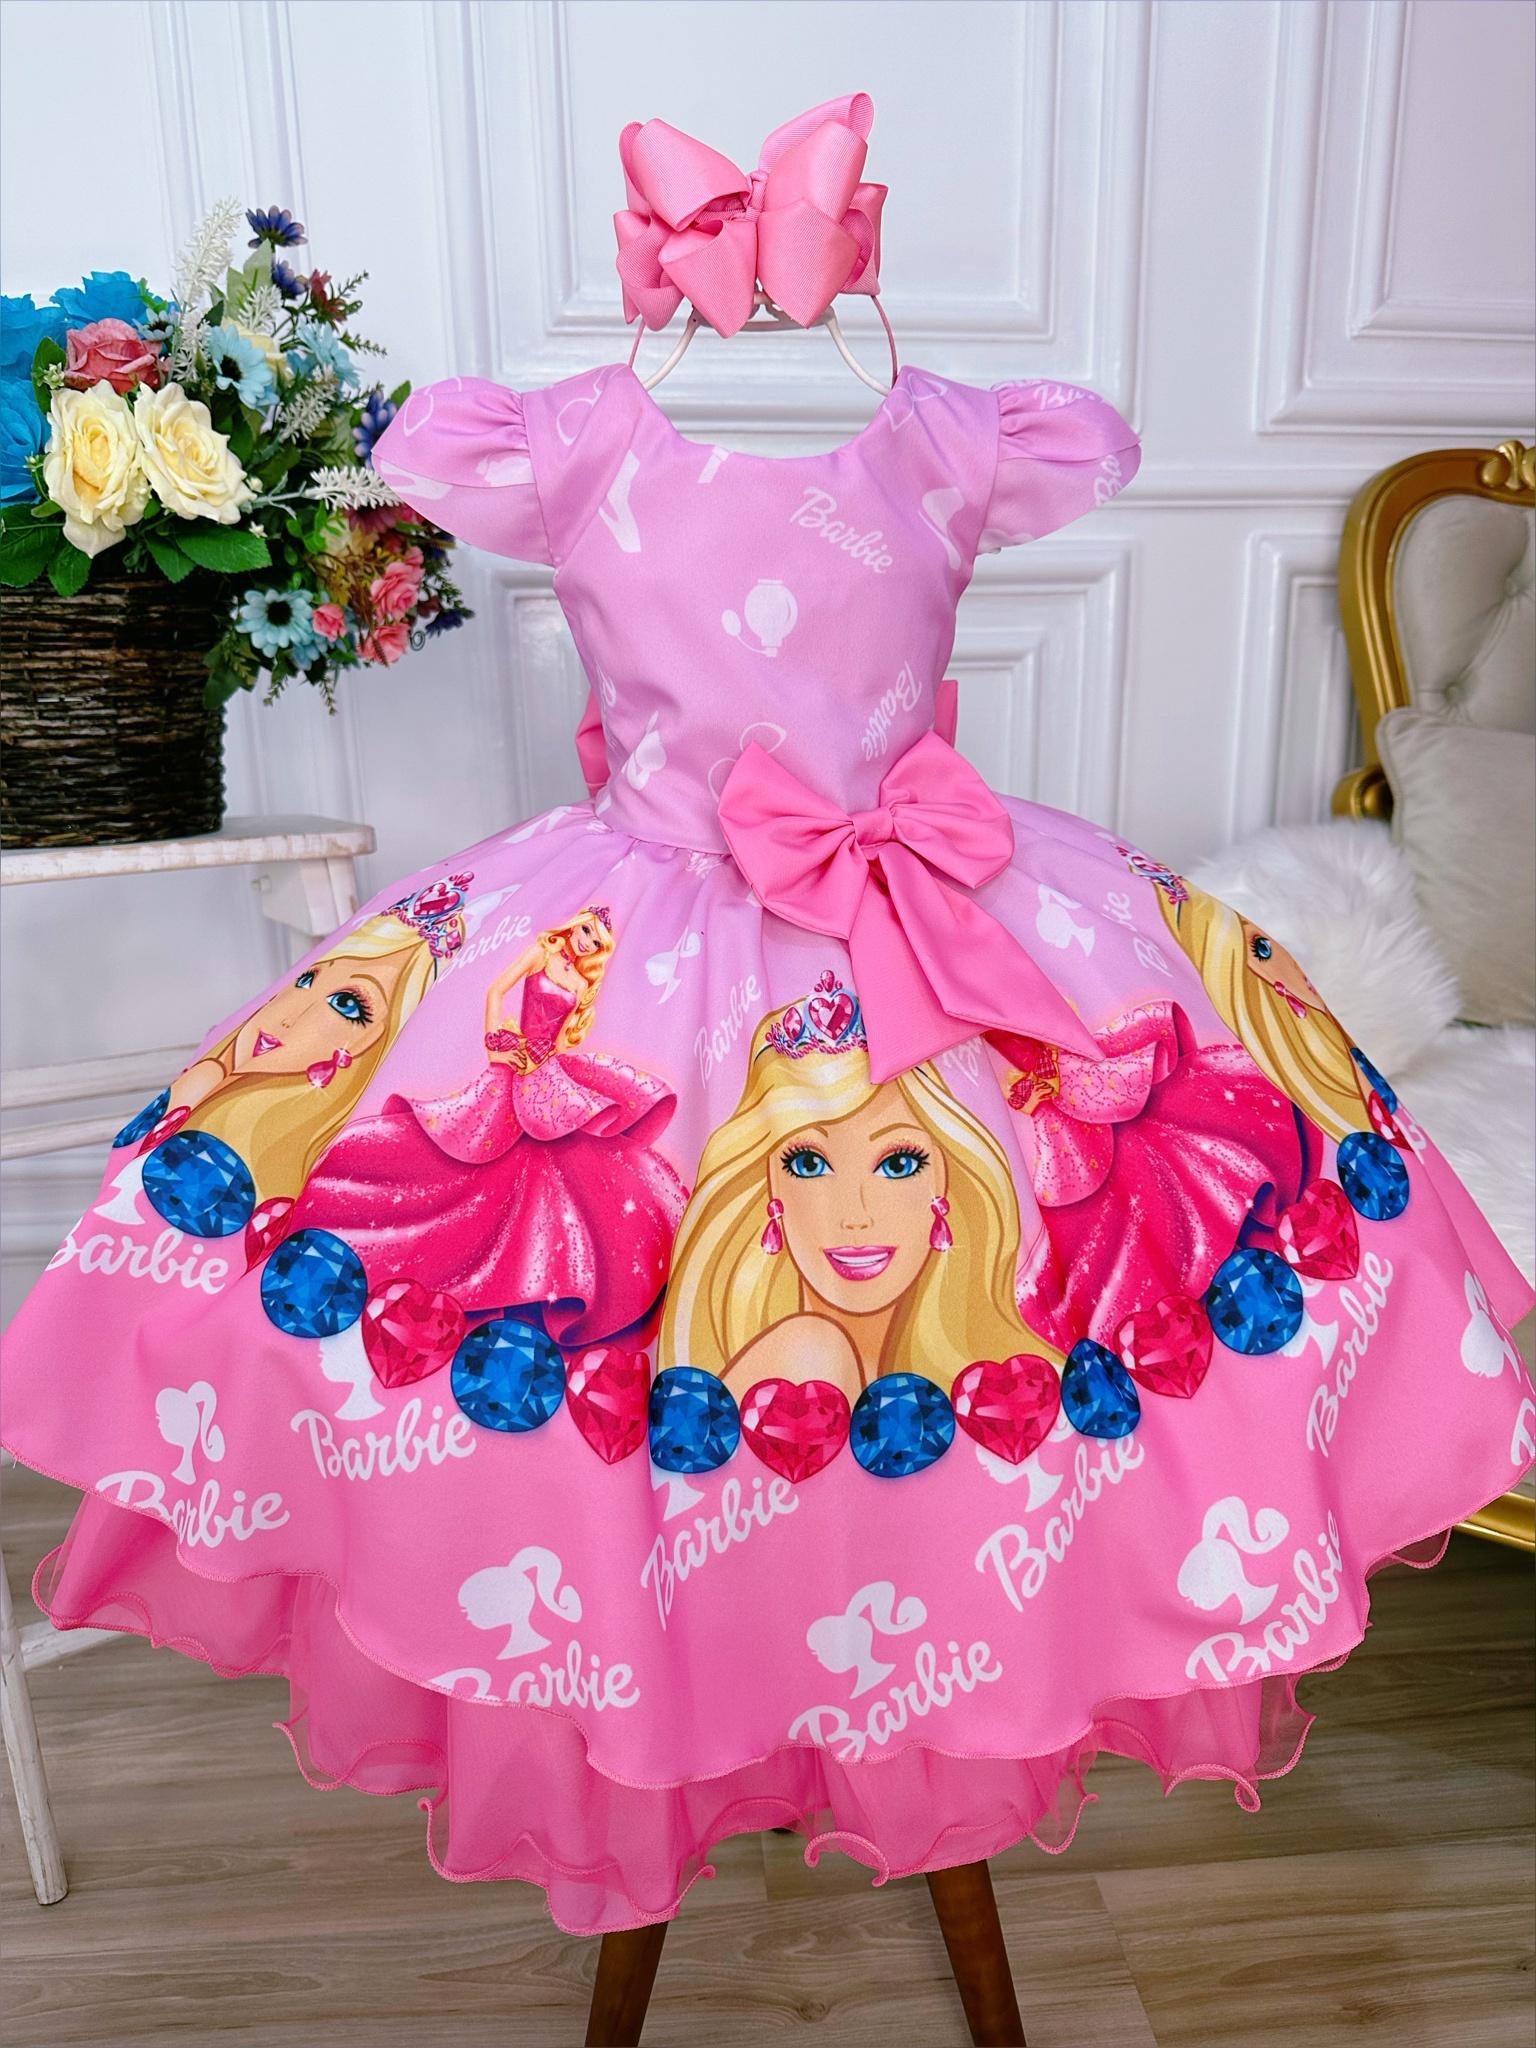 Vestido Barbie Super luxo - Toda Encanto